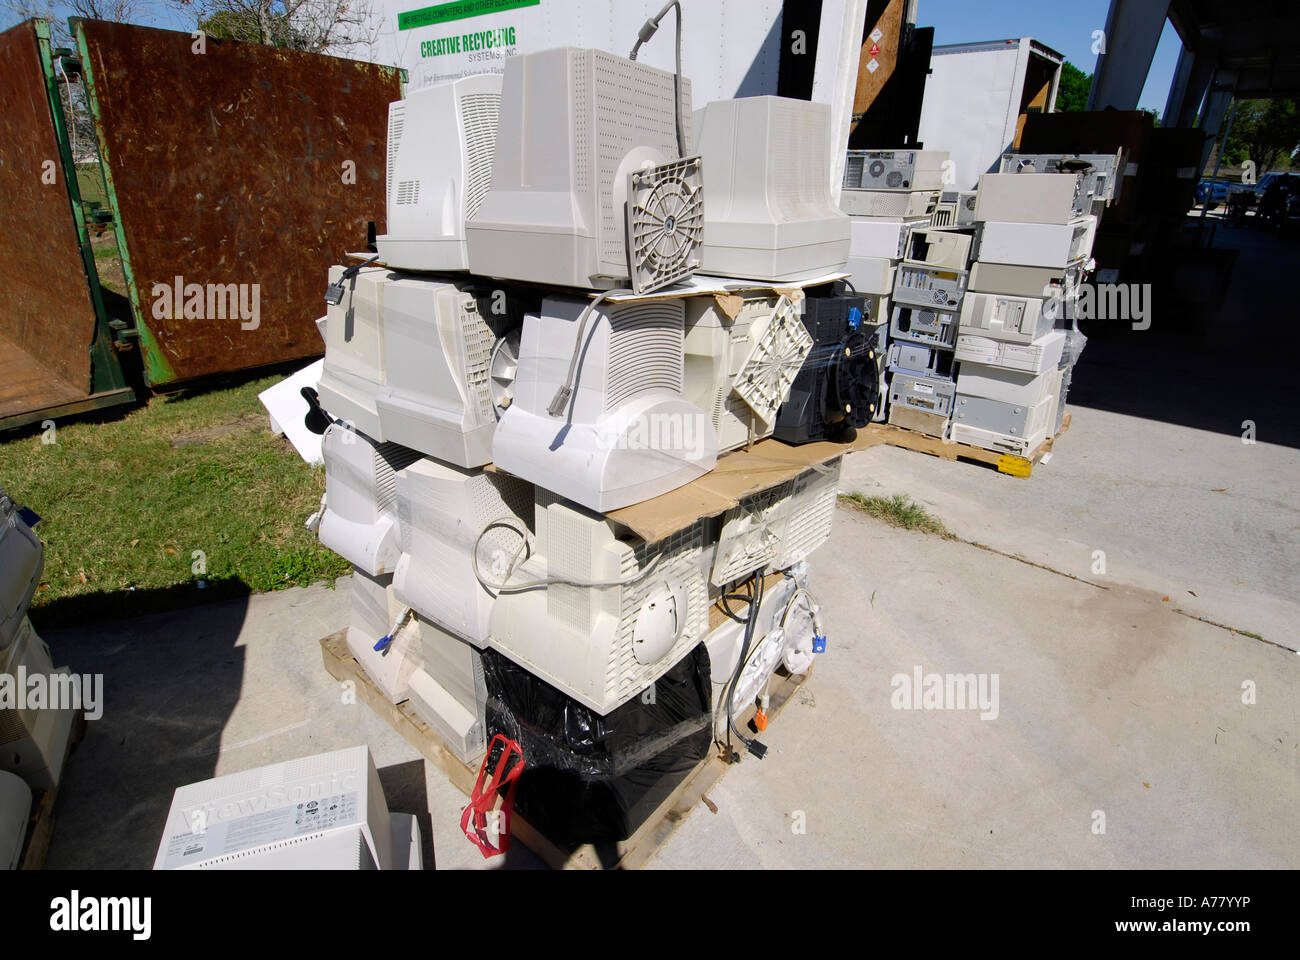 Tampa Florida recyclage de déchets ménagers et de collecte des déchets chimiques Banque D'Images